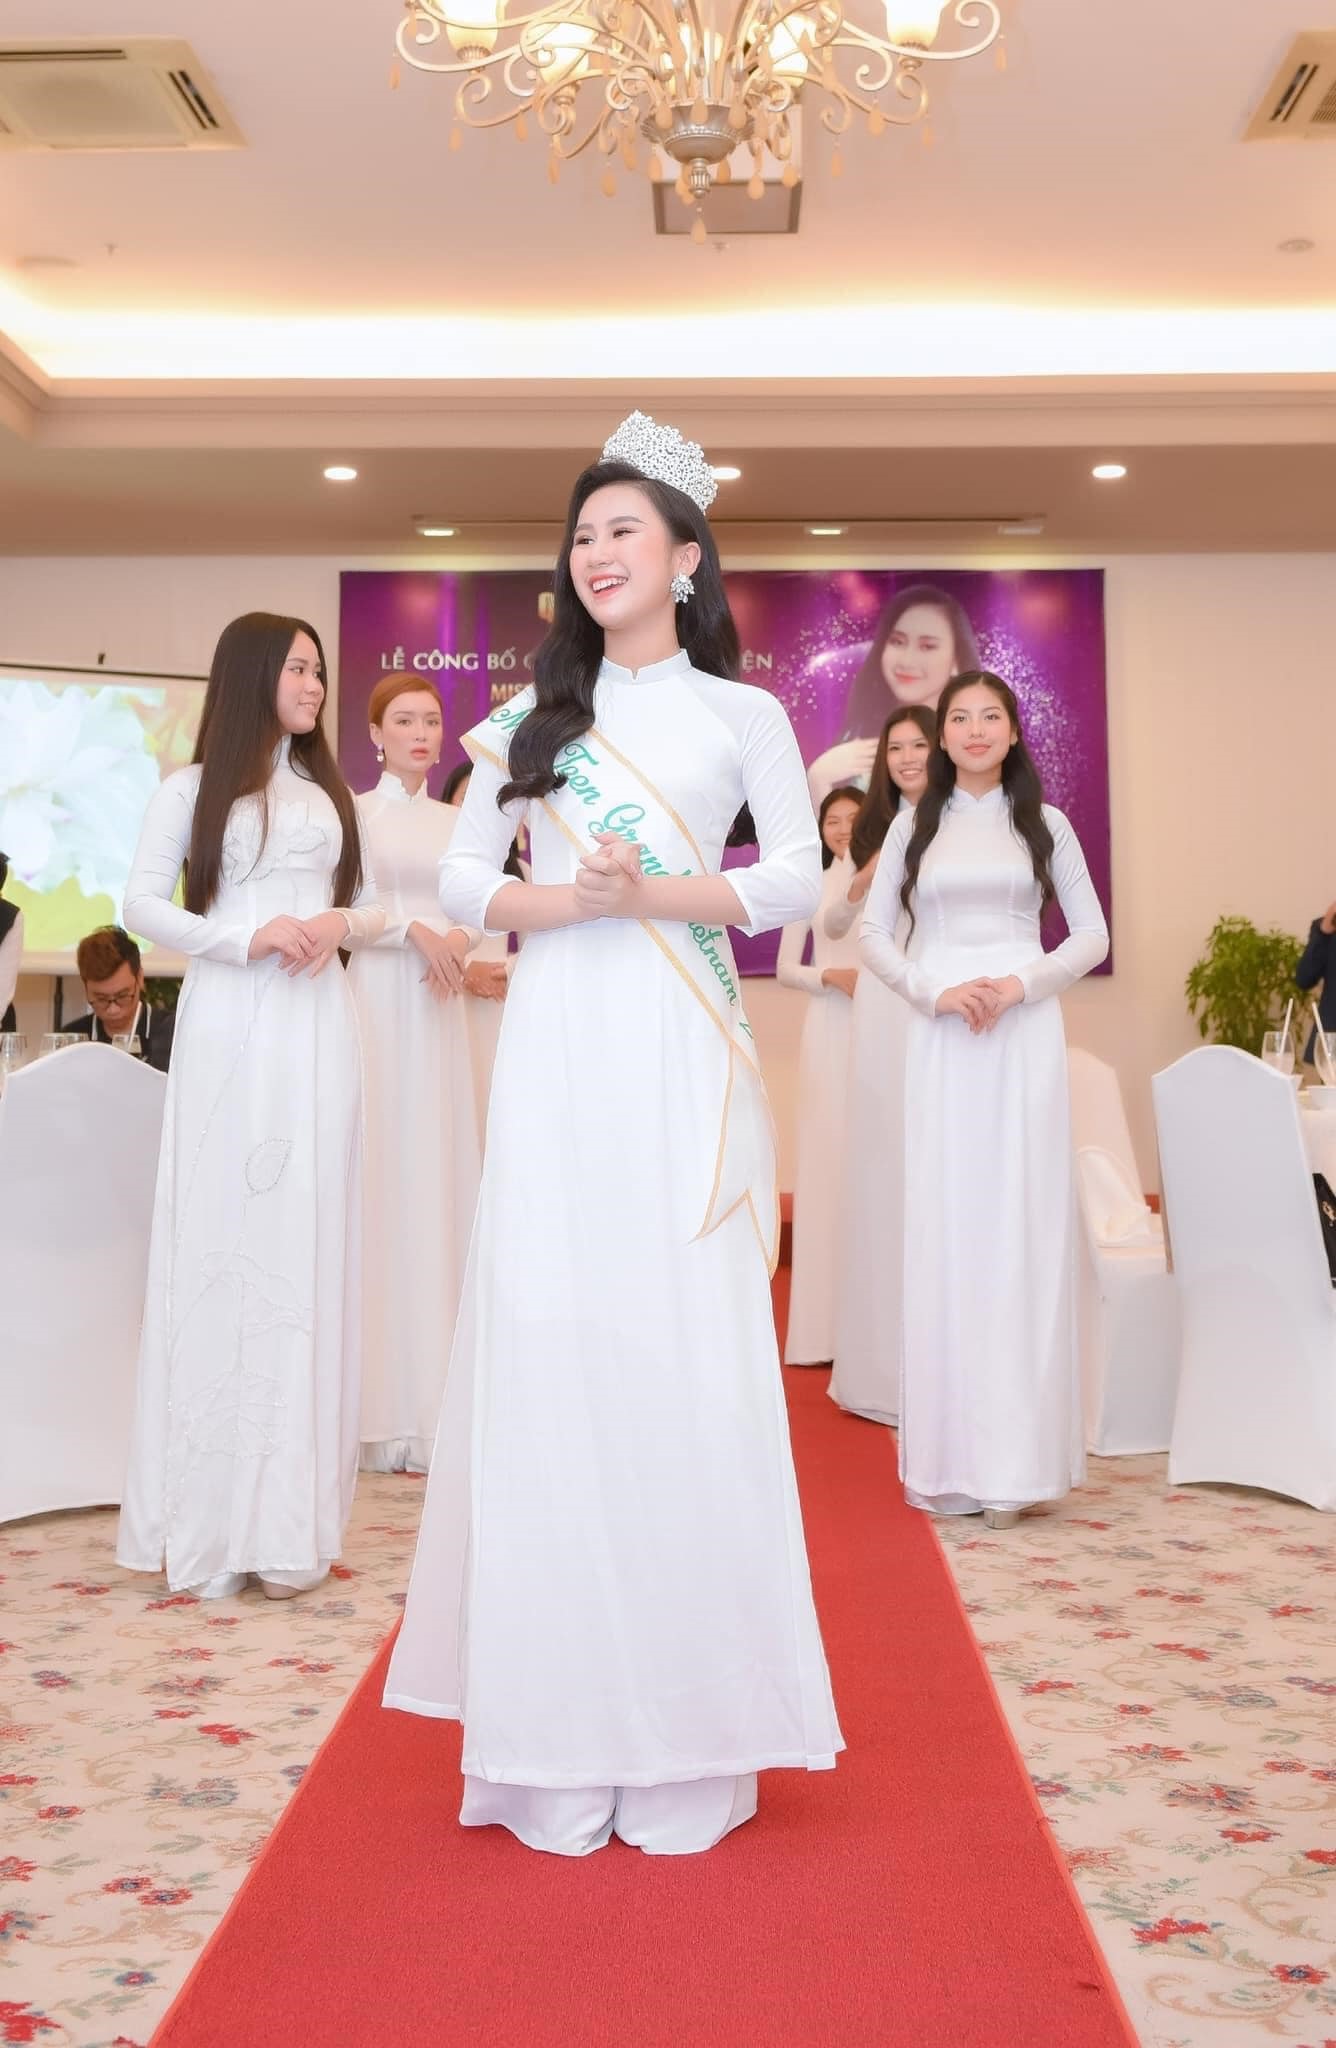 Trước đó, sau lễ đăng quang Miss Teen Grand Vietnam 2022, Nguyễn Trang Nguyệt Minh được cử là gương mặt đại diện Việt Nam đã chính thức lên đường tham dự đấu trường nhan sắc và tài năng quốc tế Miss Teen Grand International 2023 được tổ chức tại Cambodia.